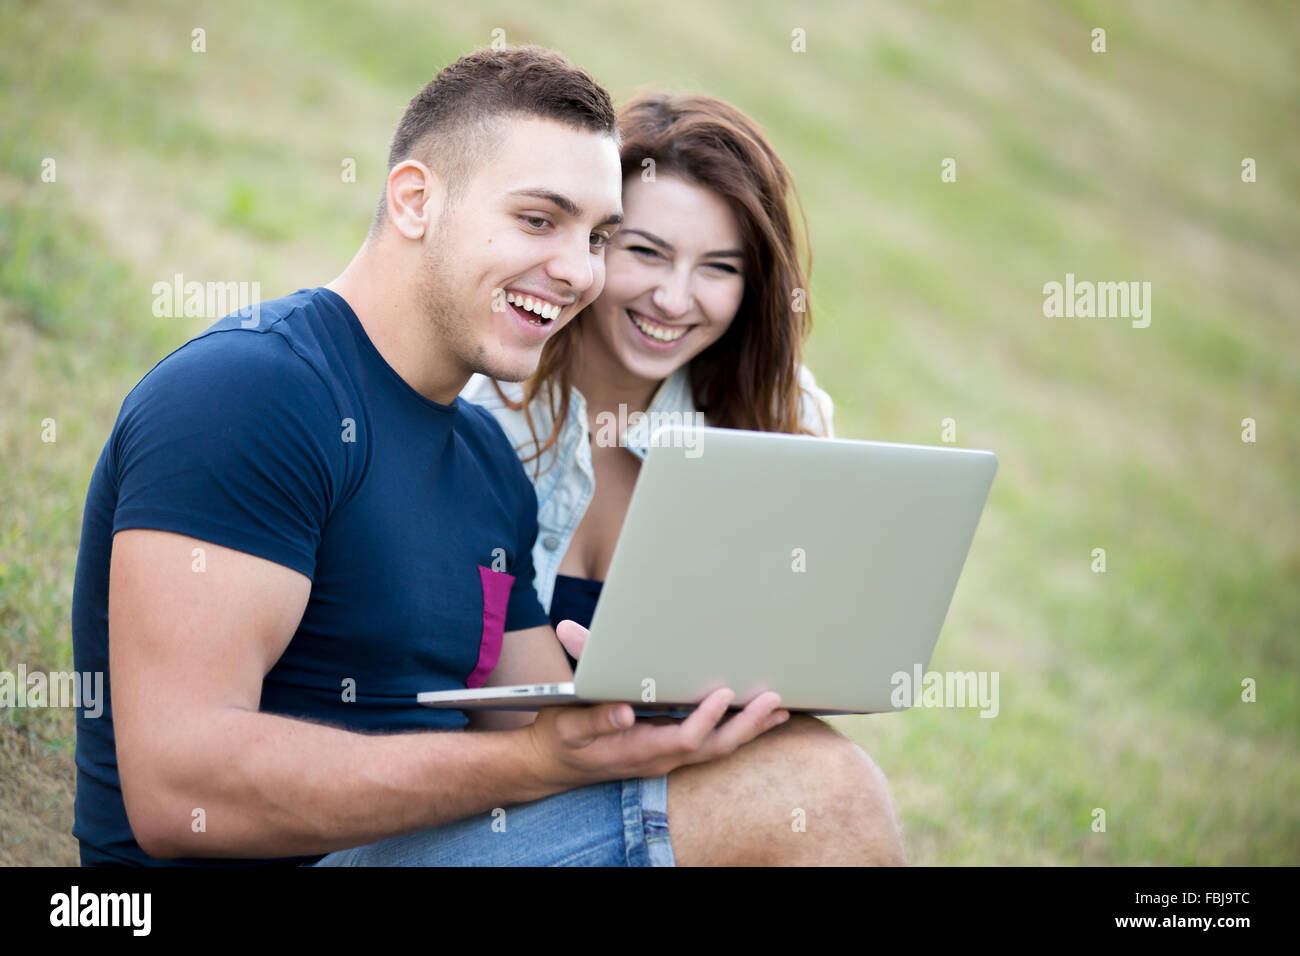 Portrait de jeune homme positif et belle femme portant des vêtements décontractés sitting on grass in park sur journée d'été, travailler sur le tour Banque D'Images